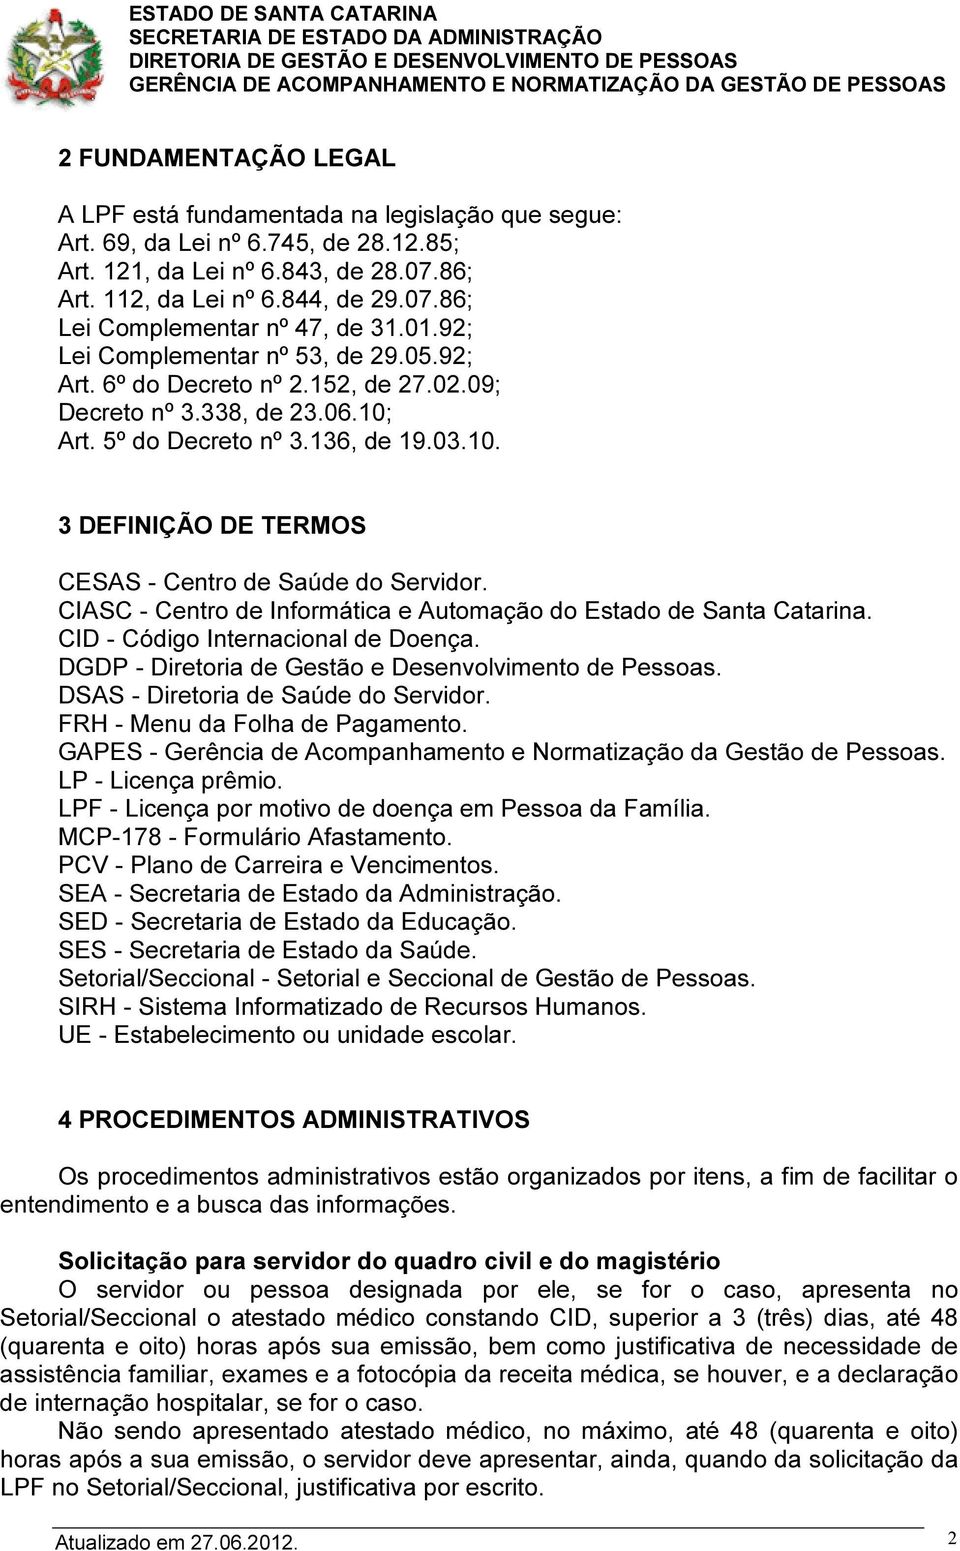 CIASC - Centro de Informática e Automação do Estado de Santa Catarina. CID - Código Internacional de Doença. DGDP - Diretoria de Gestão e Desenvolvimento de Pessoas.